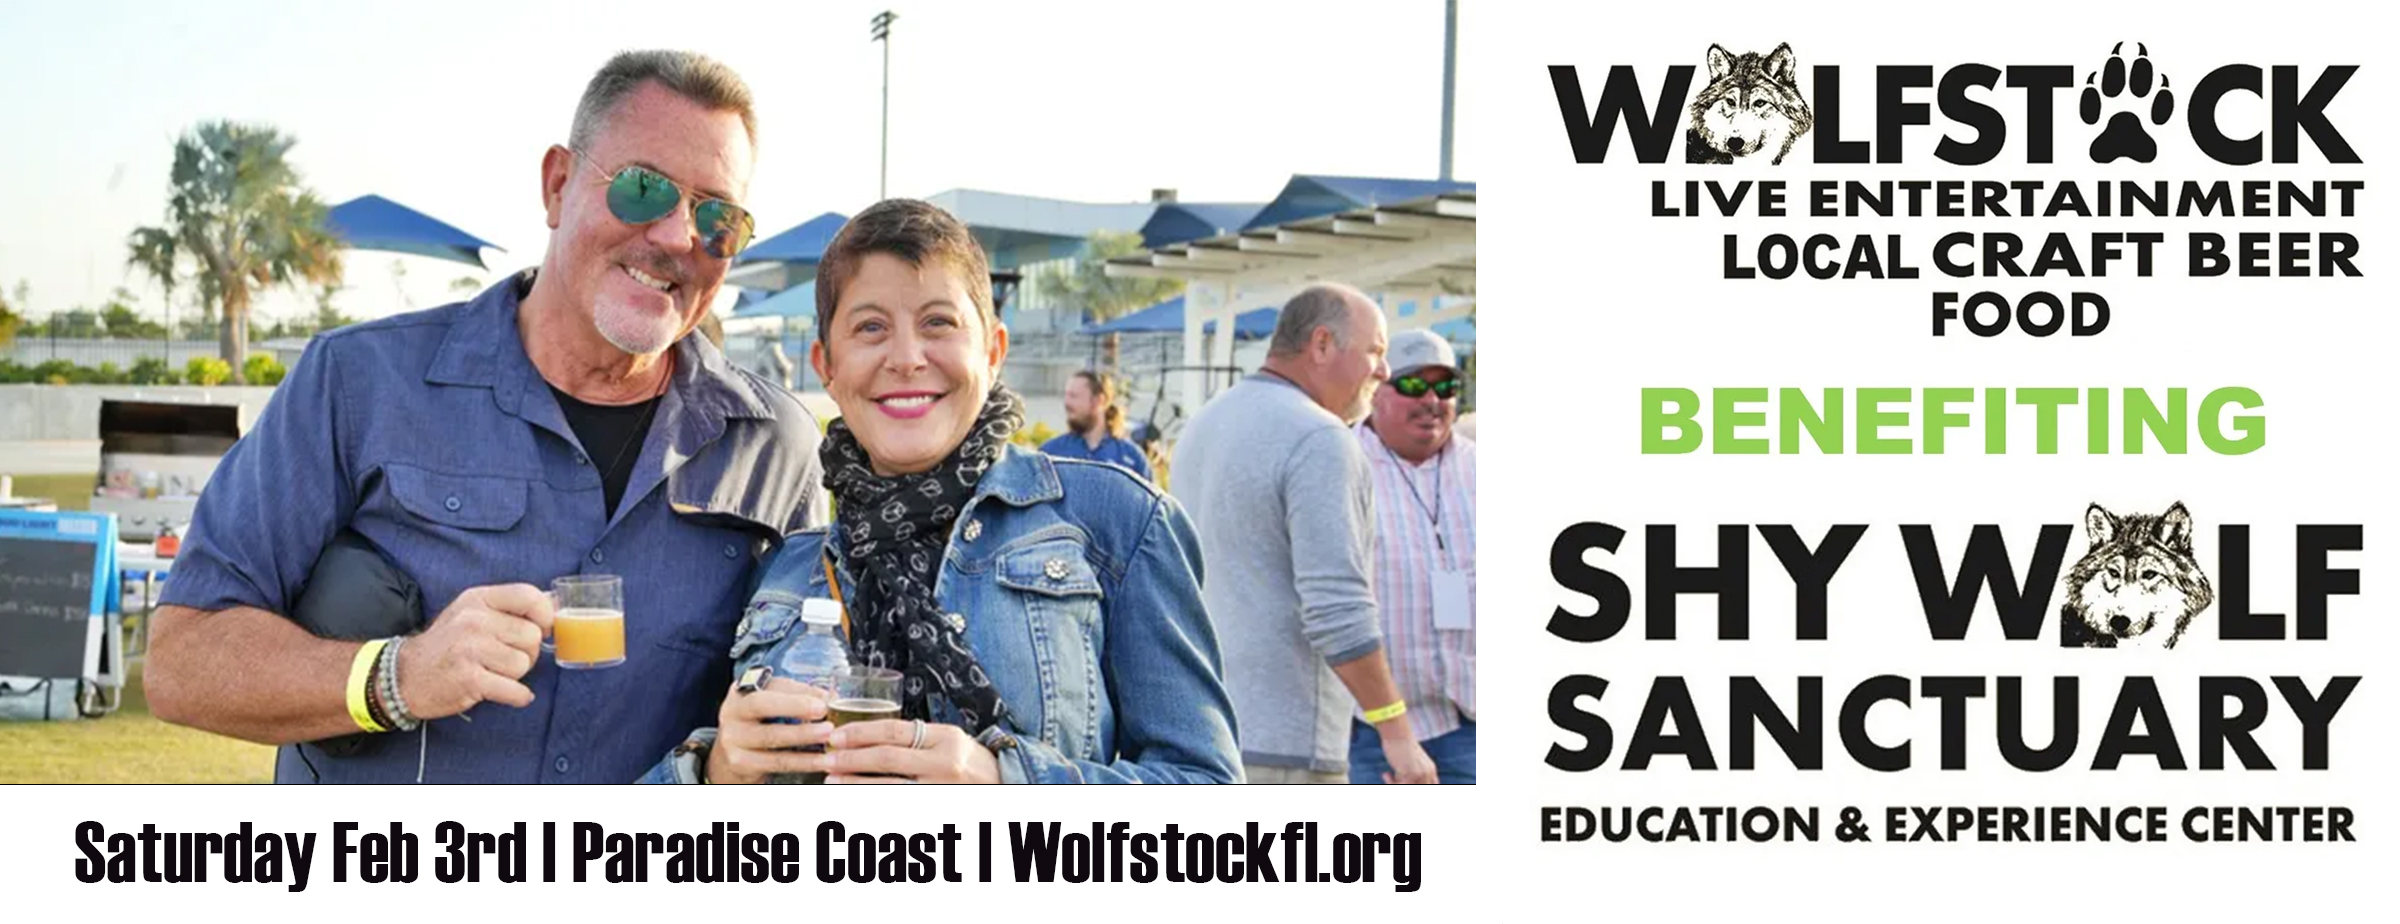 Wolfstock banner image